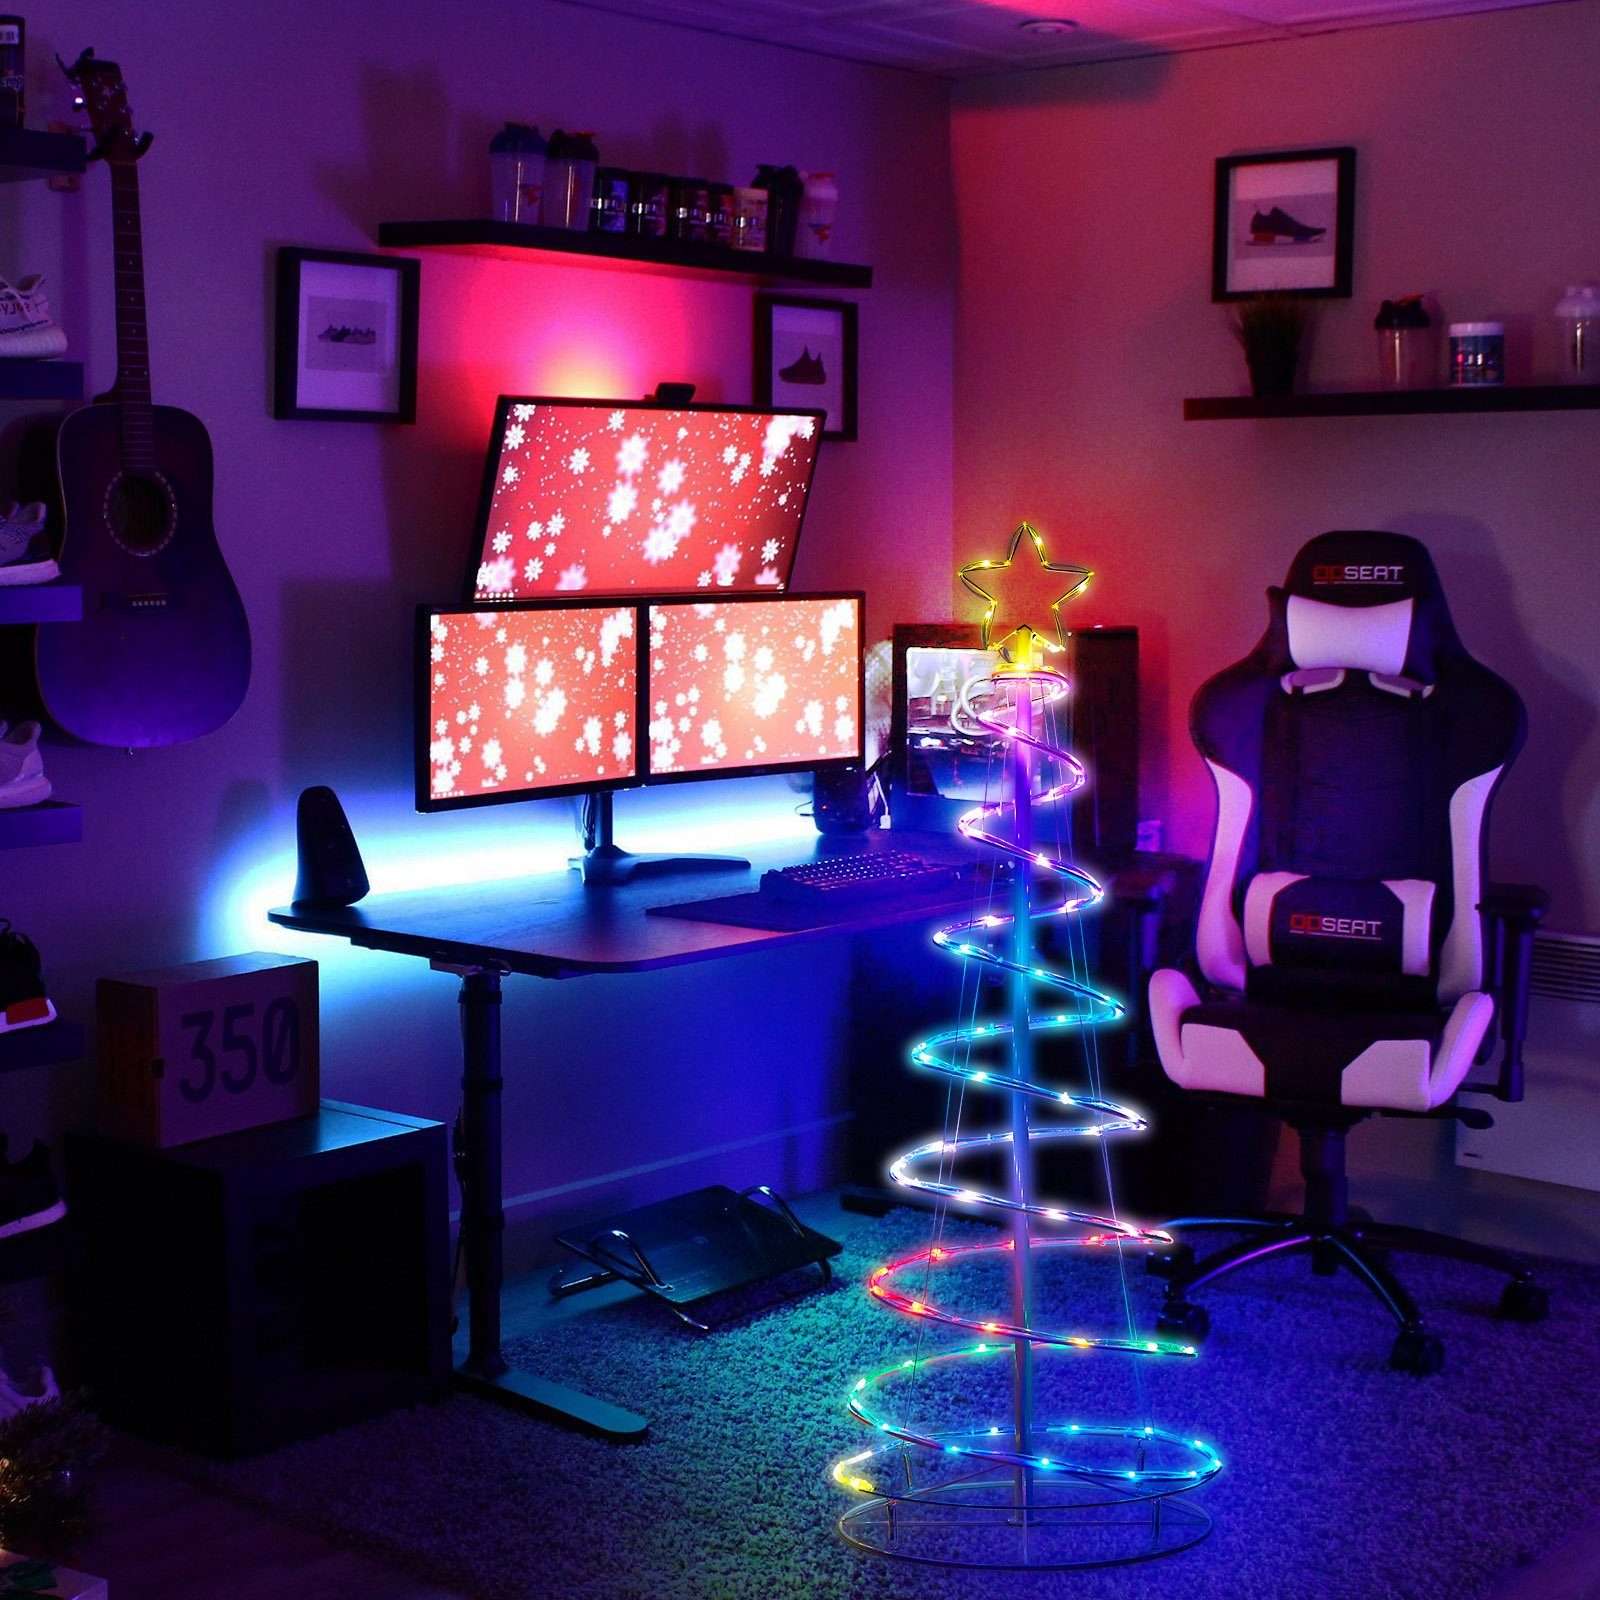 Beleuchtung Beleuchtungsmodi, Licht, Timer&Fernsteuerung, 12 Deko, Sunicol USB Zusammenklappbar, RGBW Weihnachtsbaum LED-Lichterkette 1.2m/1.5m/1.8m Bäume